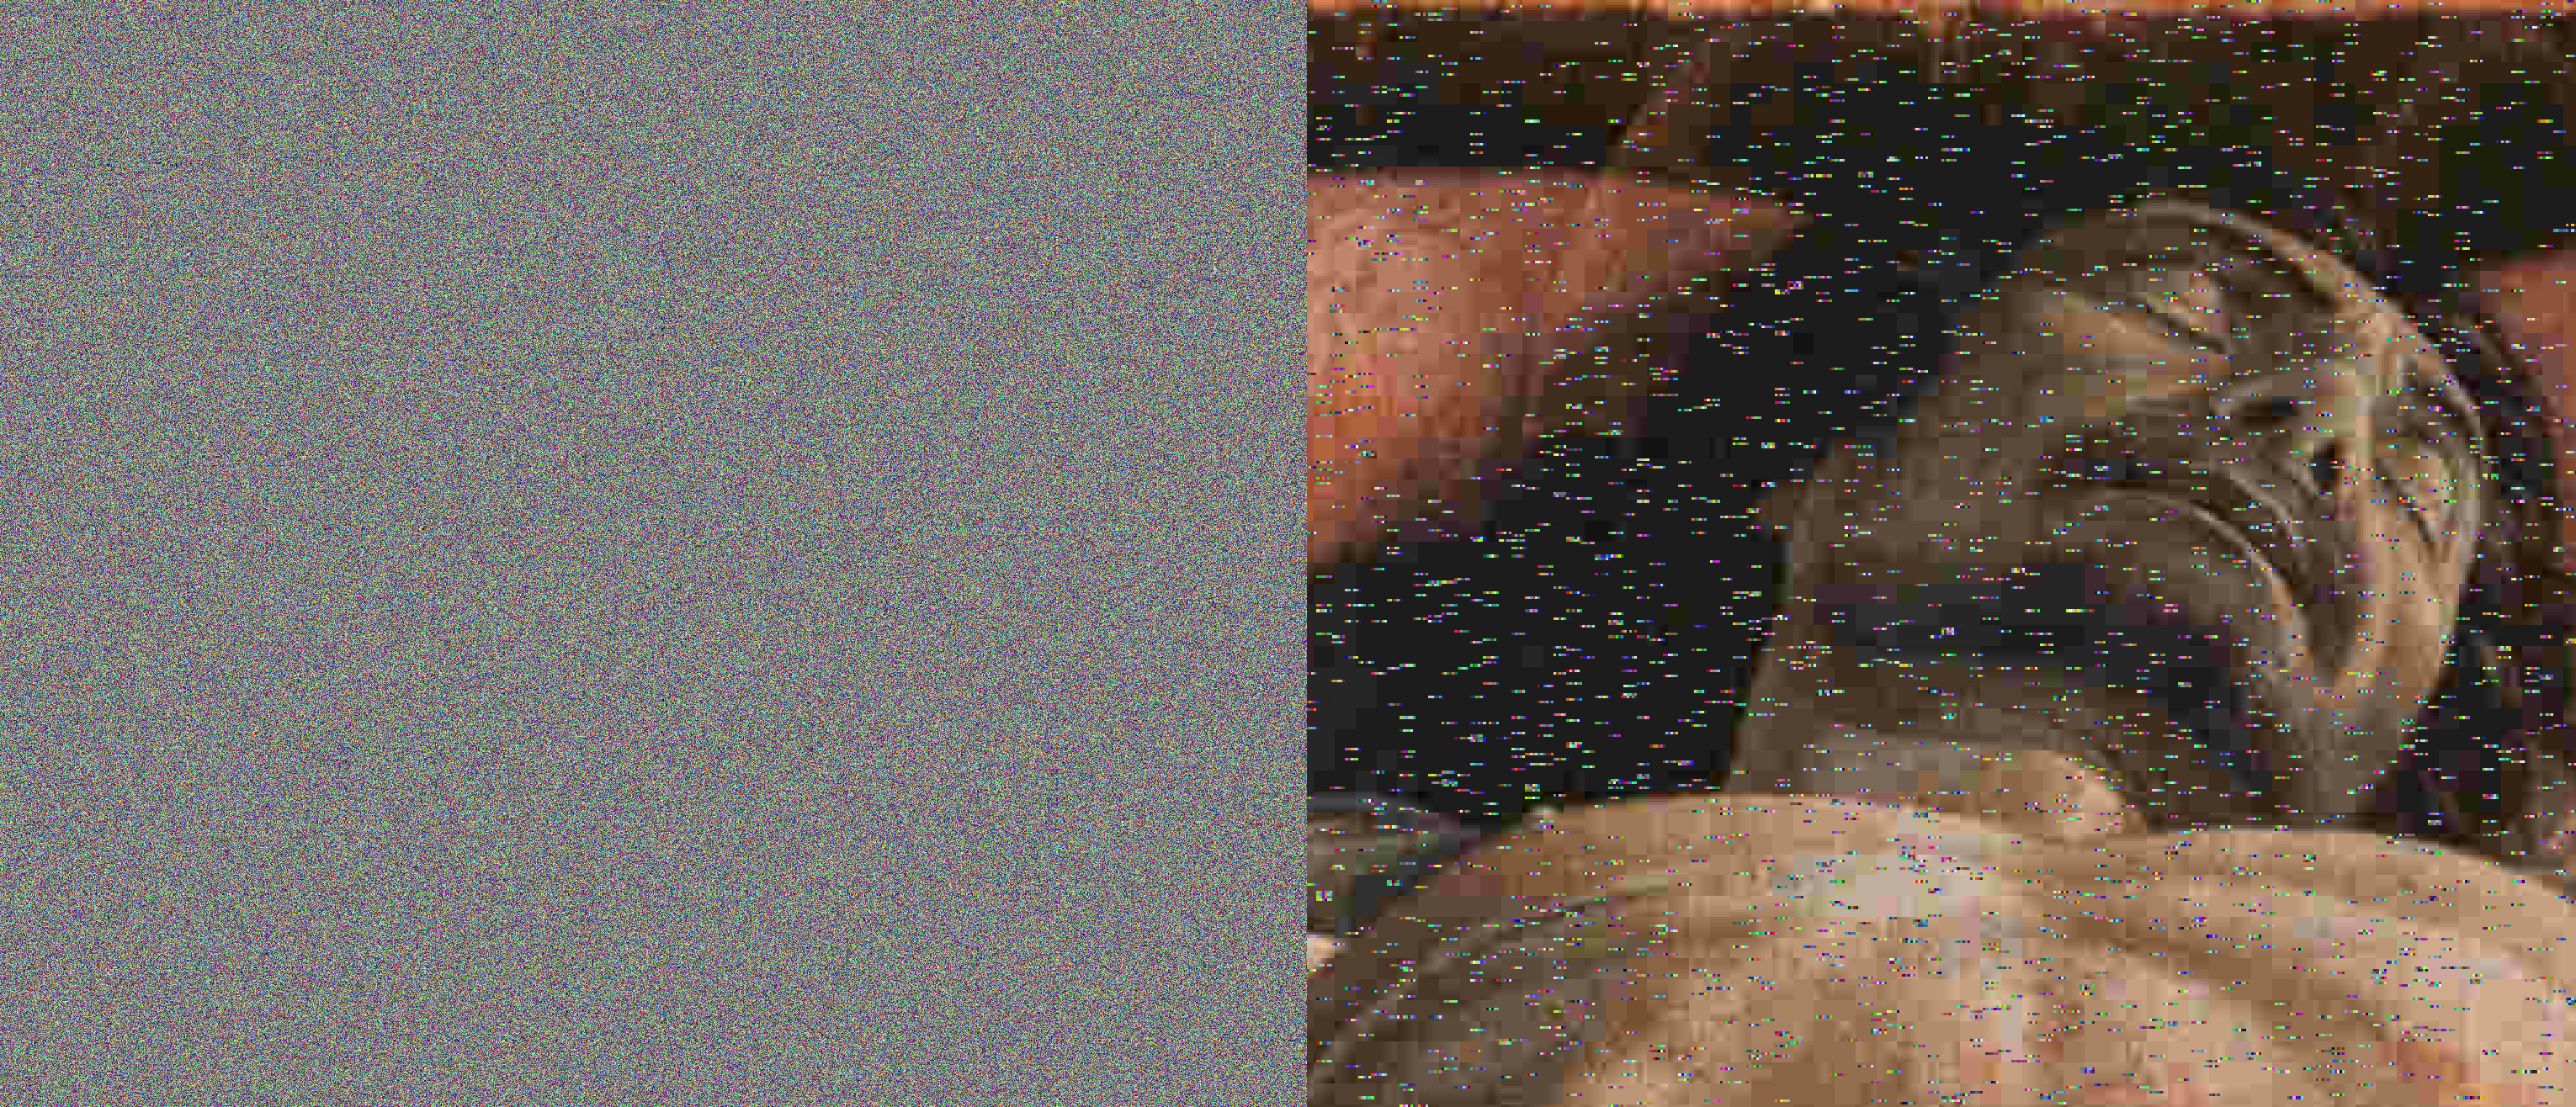 mantegna bitfliped and decrypted